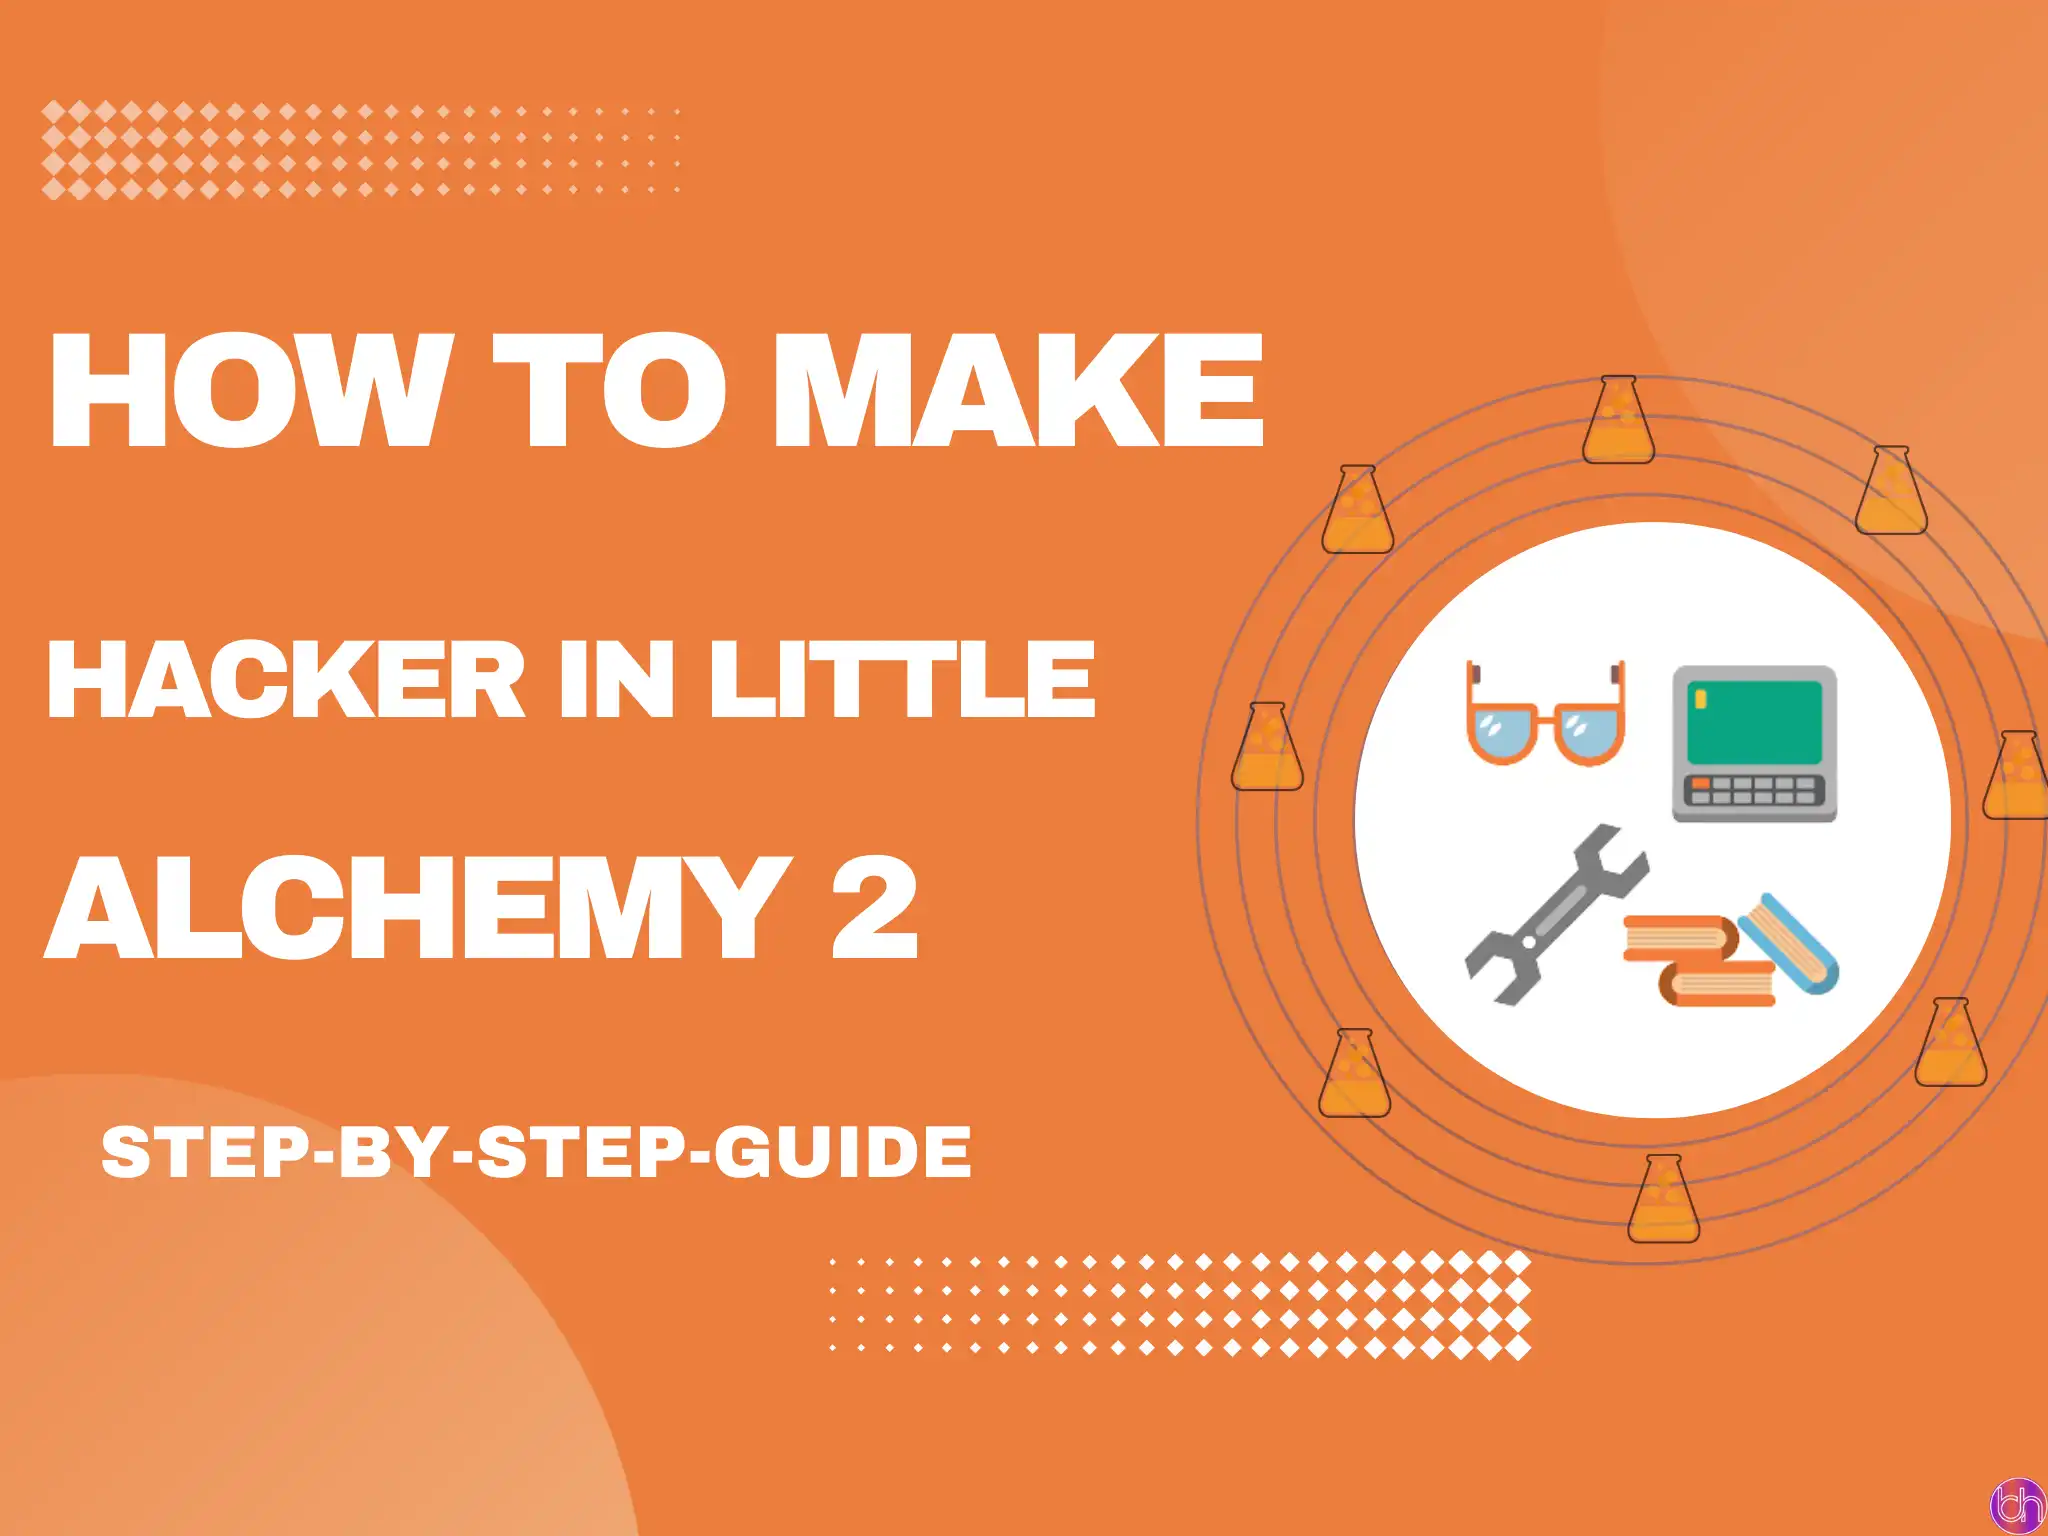 How to make Hacker in little alchemy 2